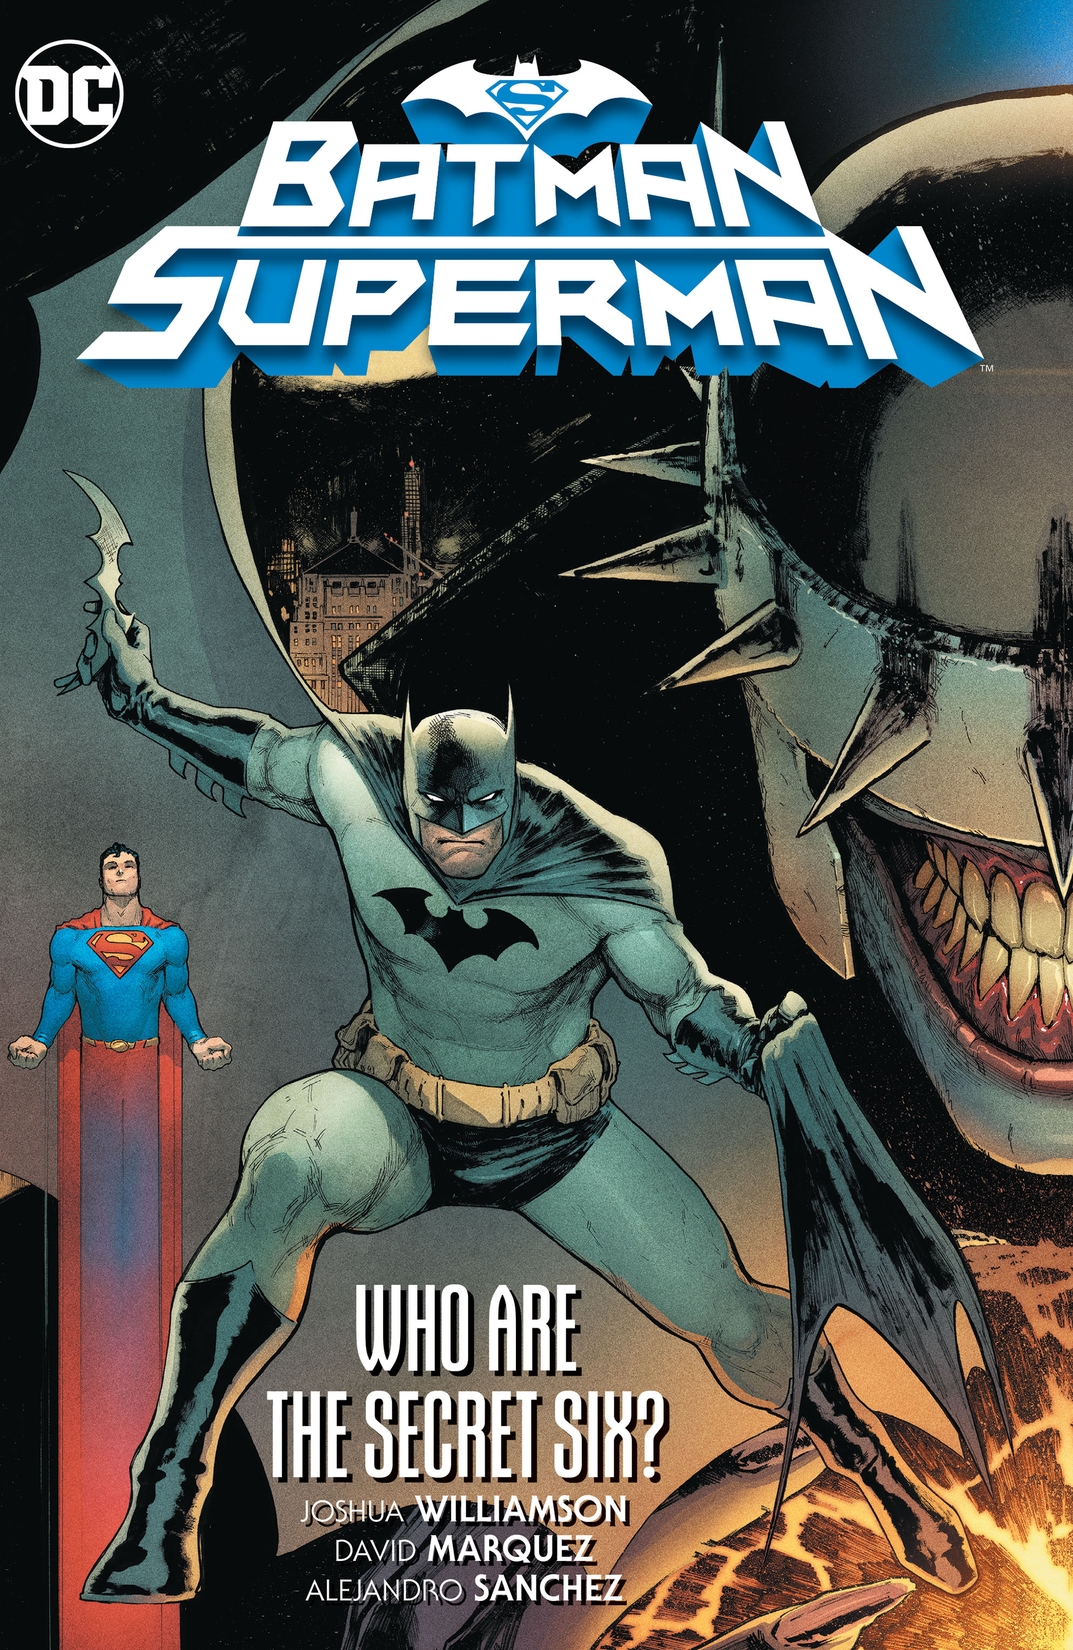 Batman/Superman Vol. 1: Who are the Secret Six? preview images